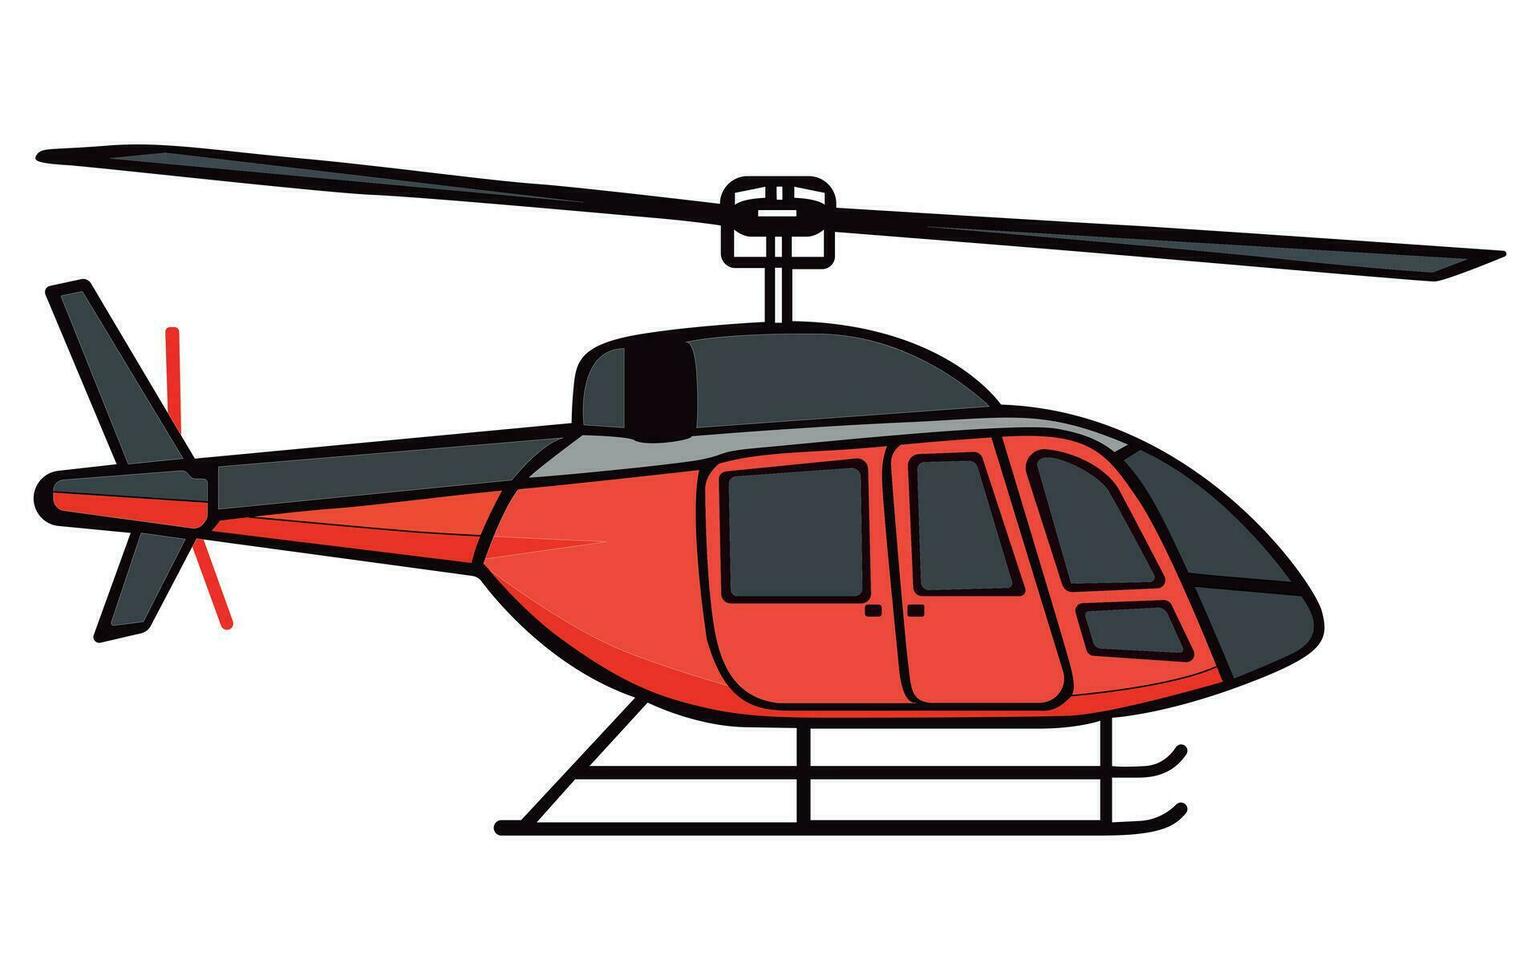 helicopters vliegtuigen illustratie, vliegend kleurrijk helikopters, lucht vervoer vlak vector illustratie